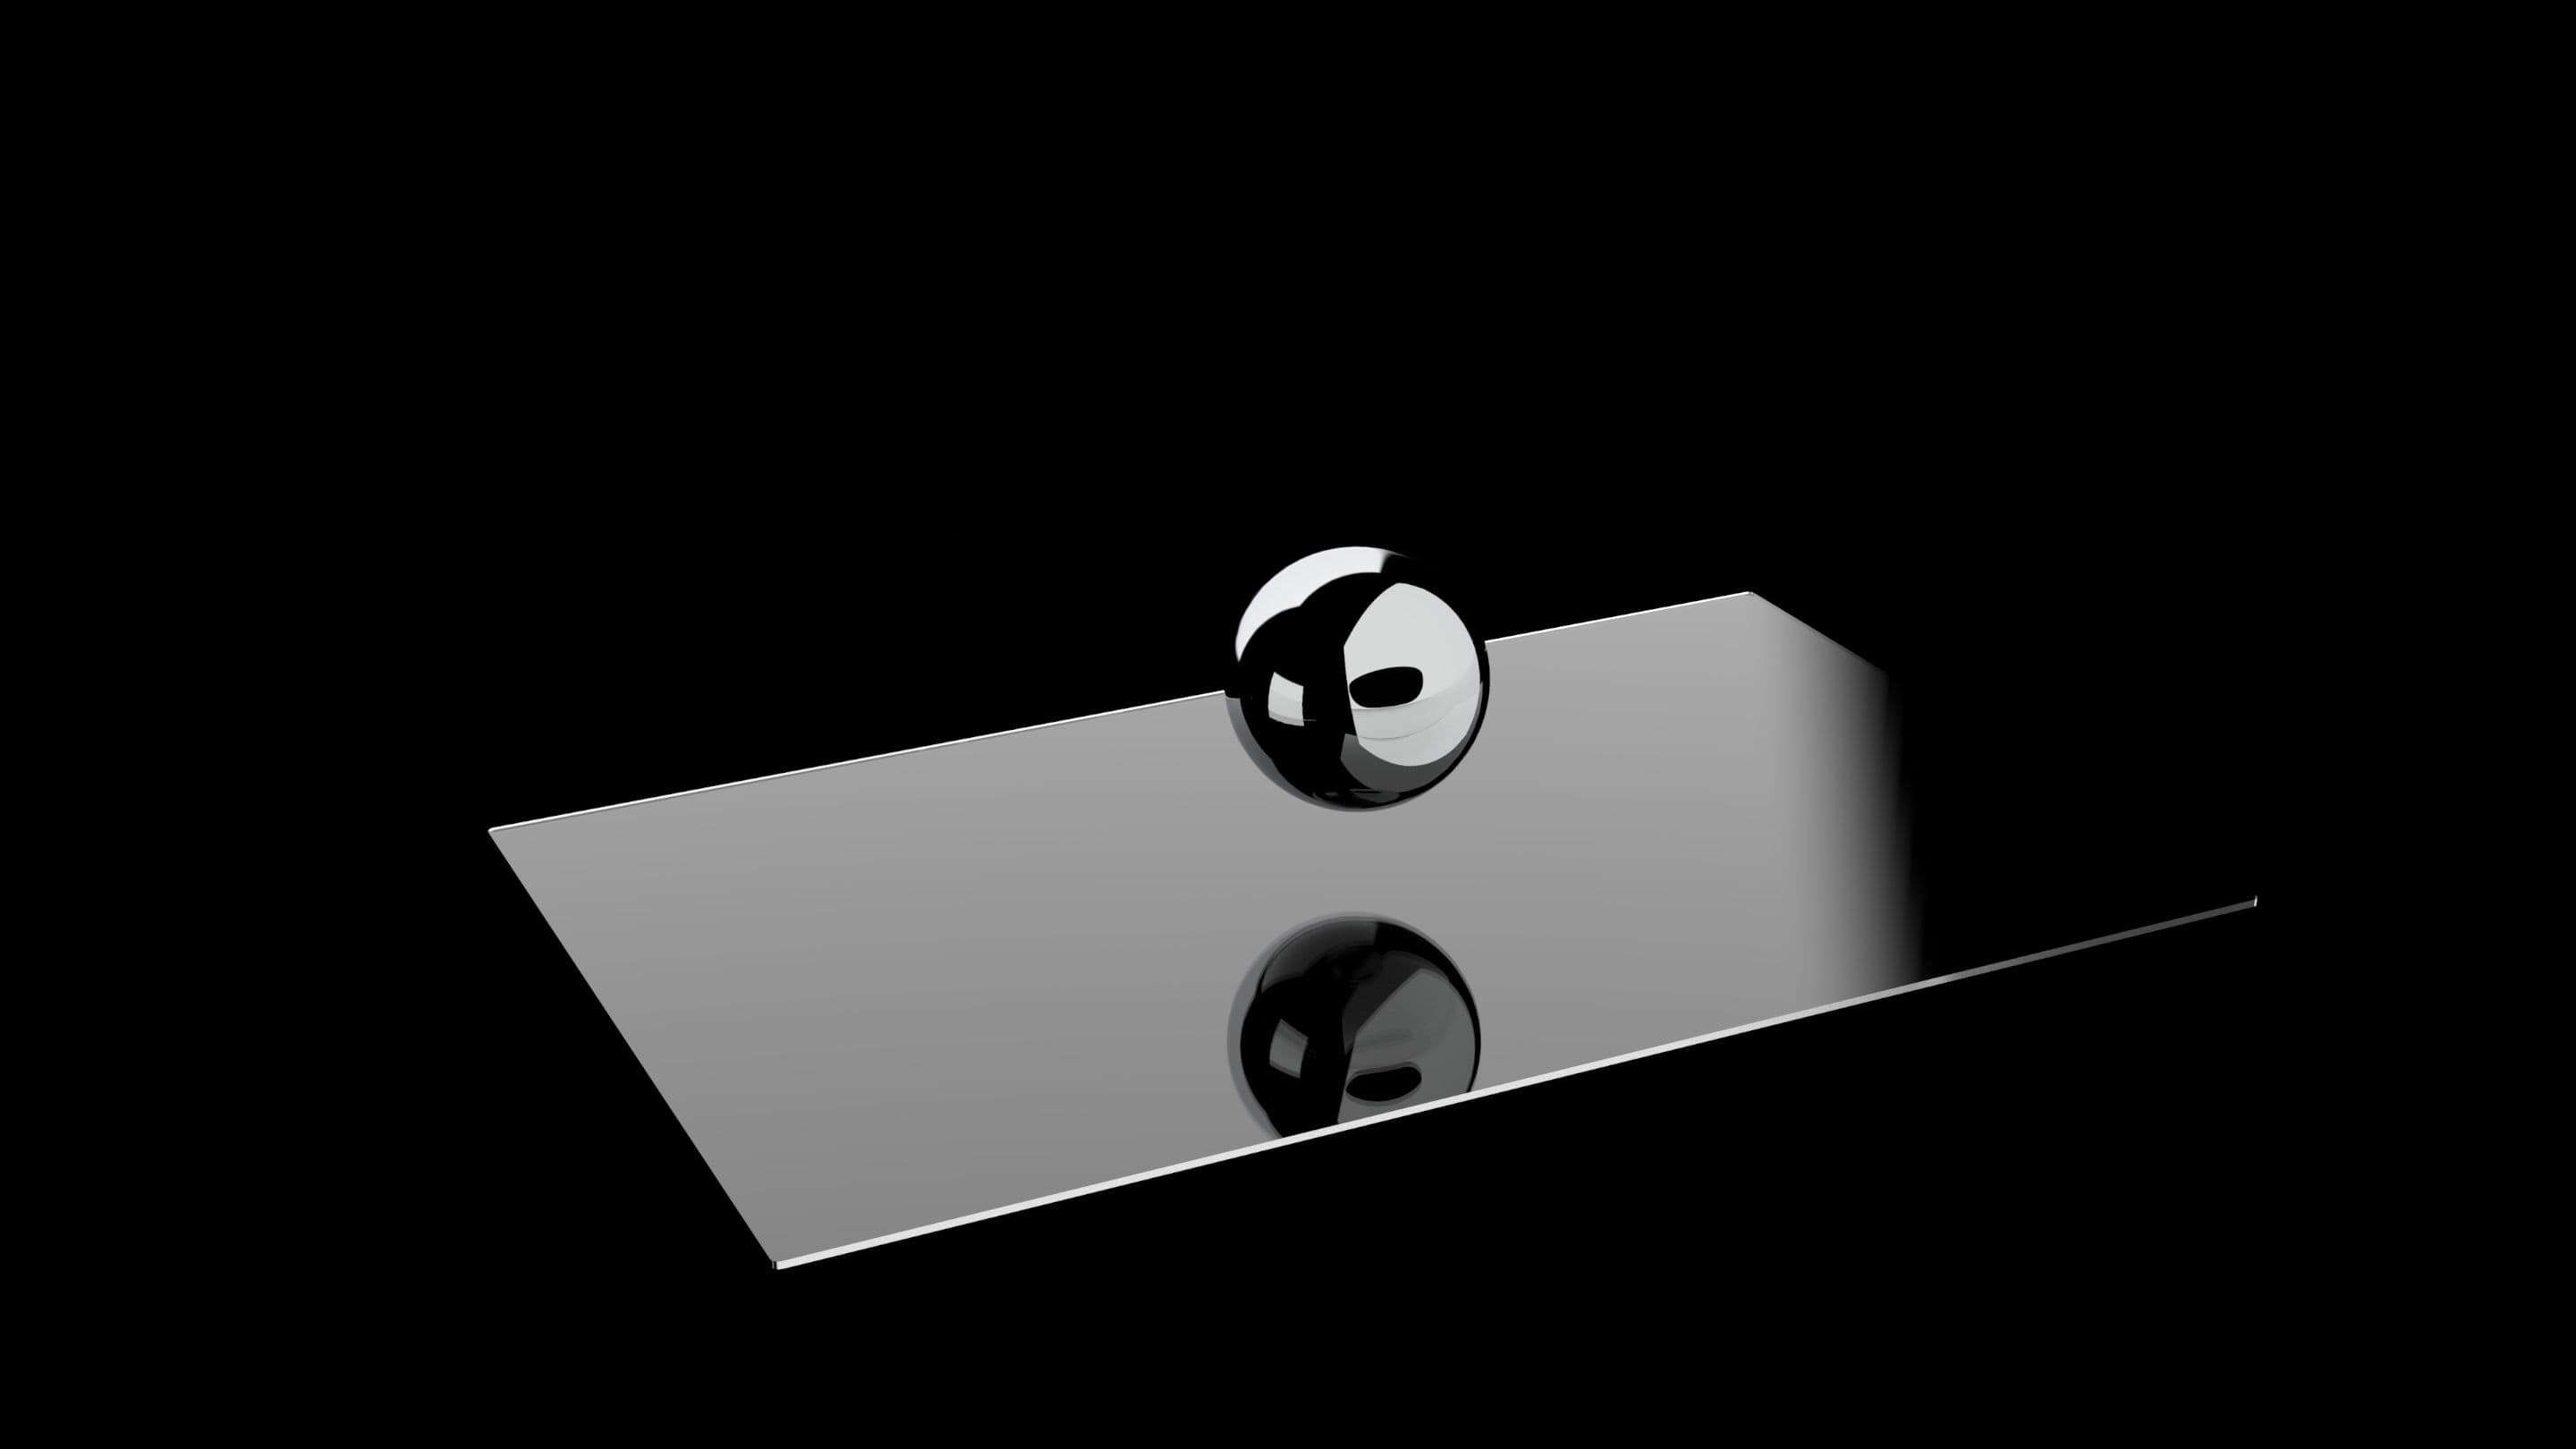 Impactinator® Vidro - Impactinator® vidro uma bola de prata em uma superfície retangular